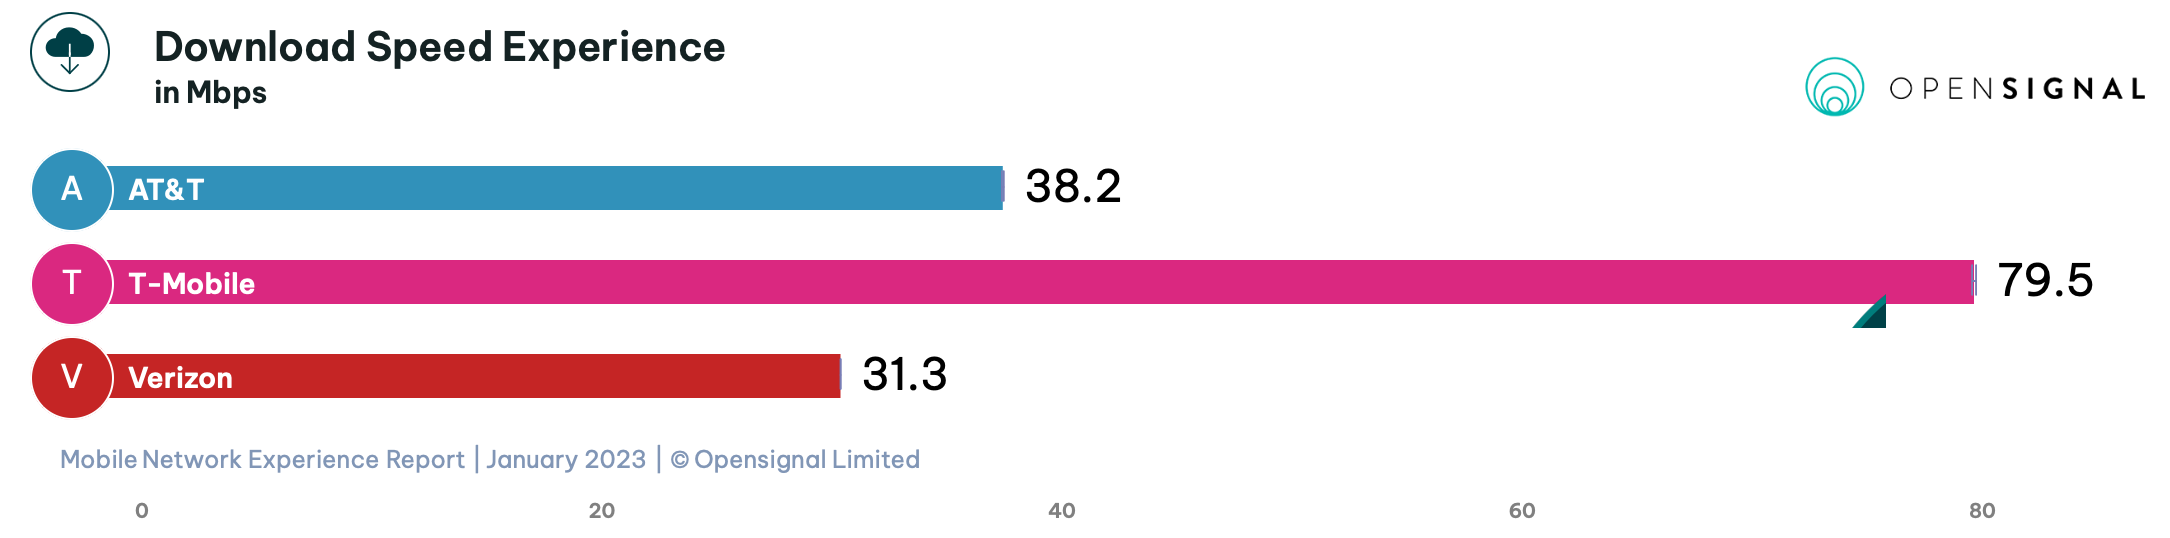 Насколько быстрее T-Mobile по сравнению с Verizon и AT&T со скоростью 4G/5G